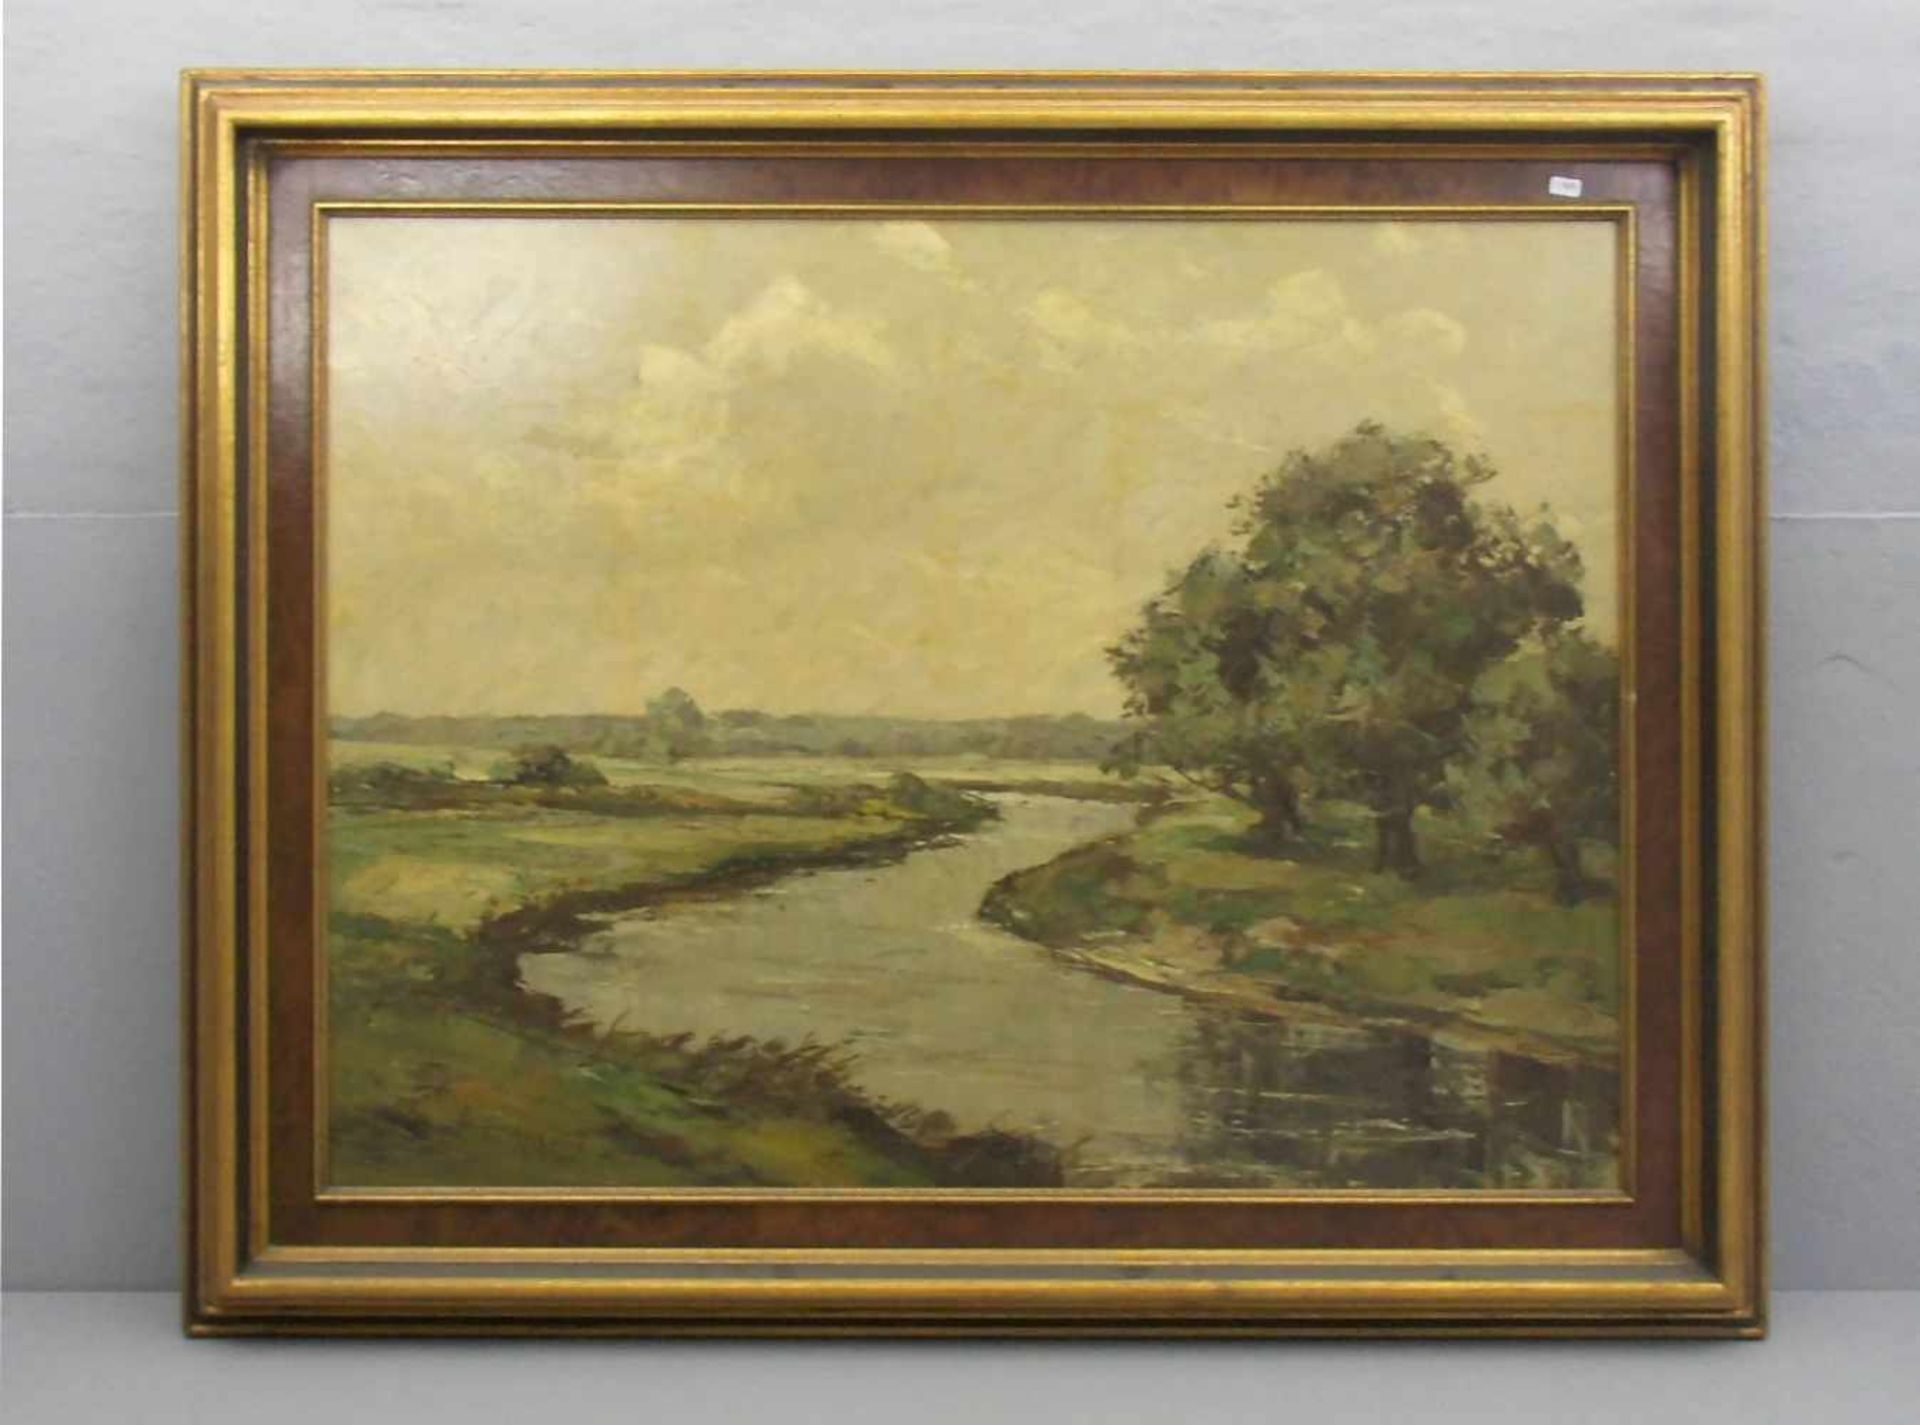 AUFENANGER, HEINRICH (Rotthausen 1899-1950 Gelsenkirchen), Gemälde / painting: "Niederrheinische